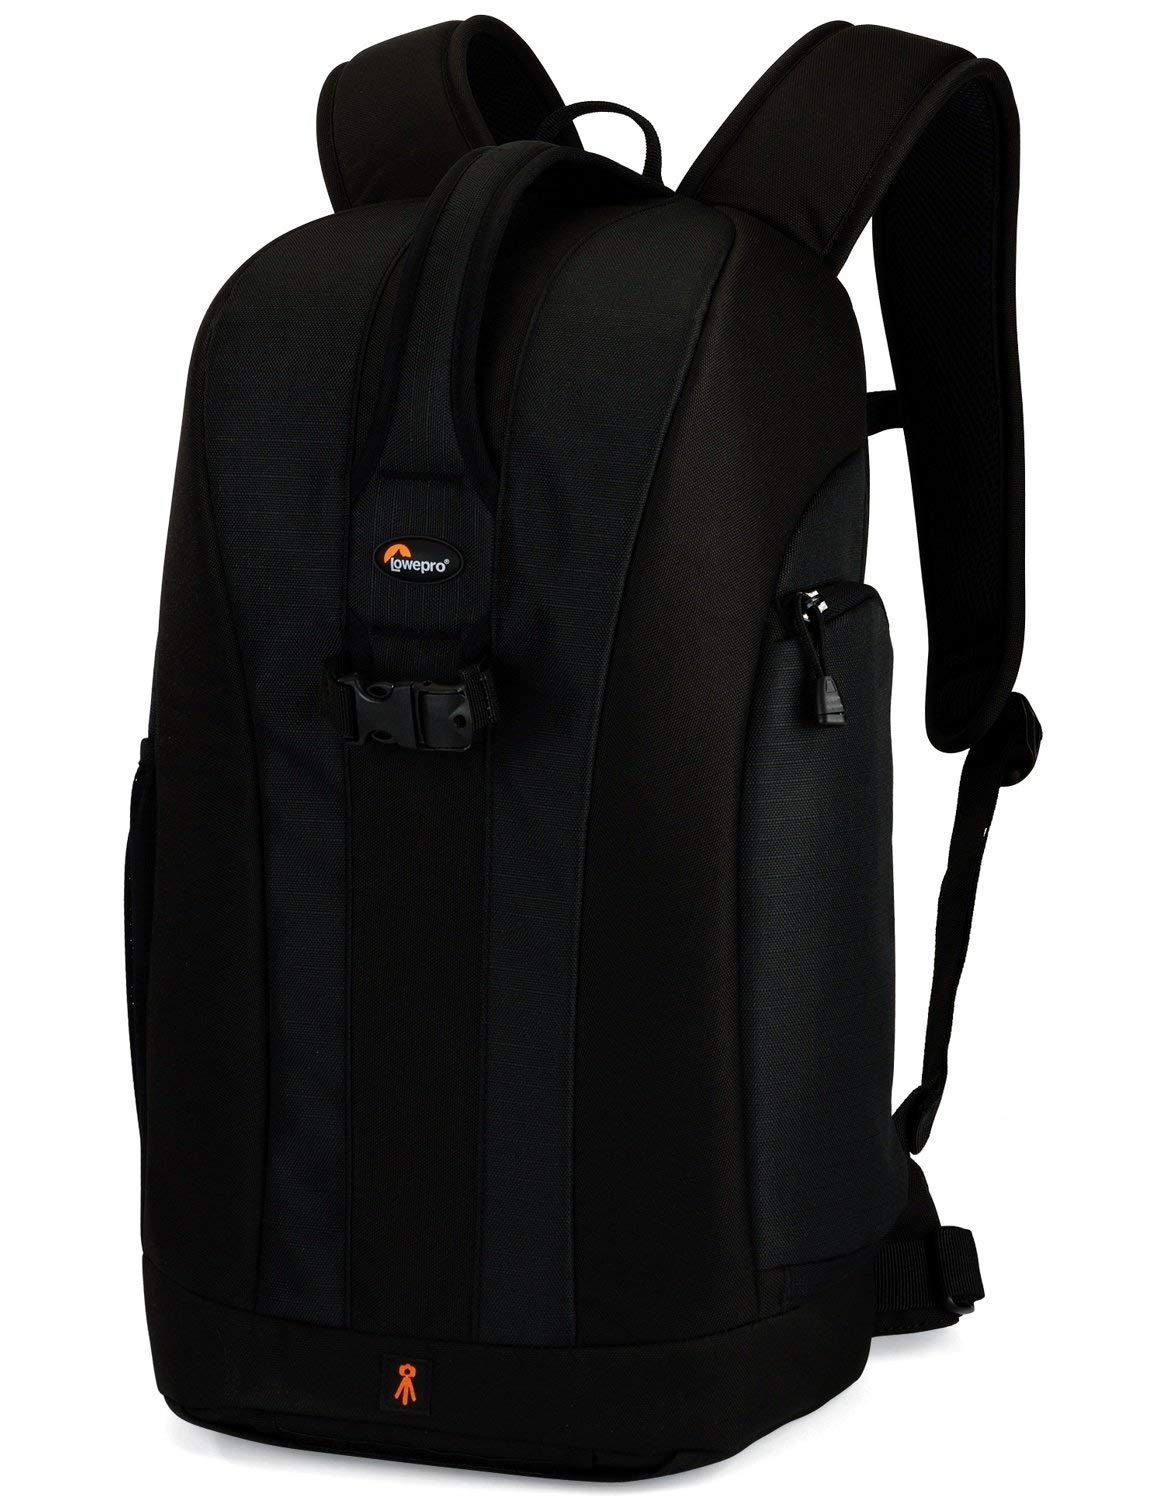 
Lowepro Flipside 300 Backpack